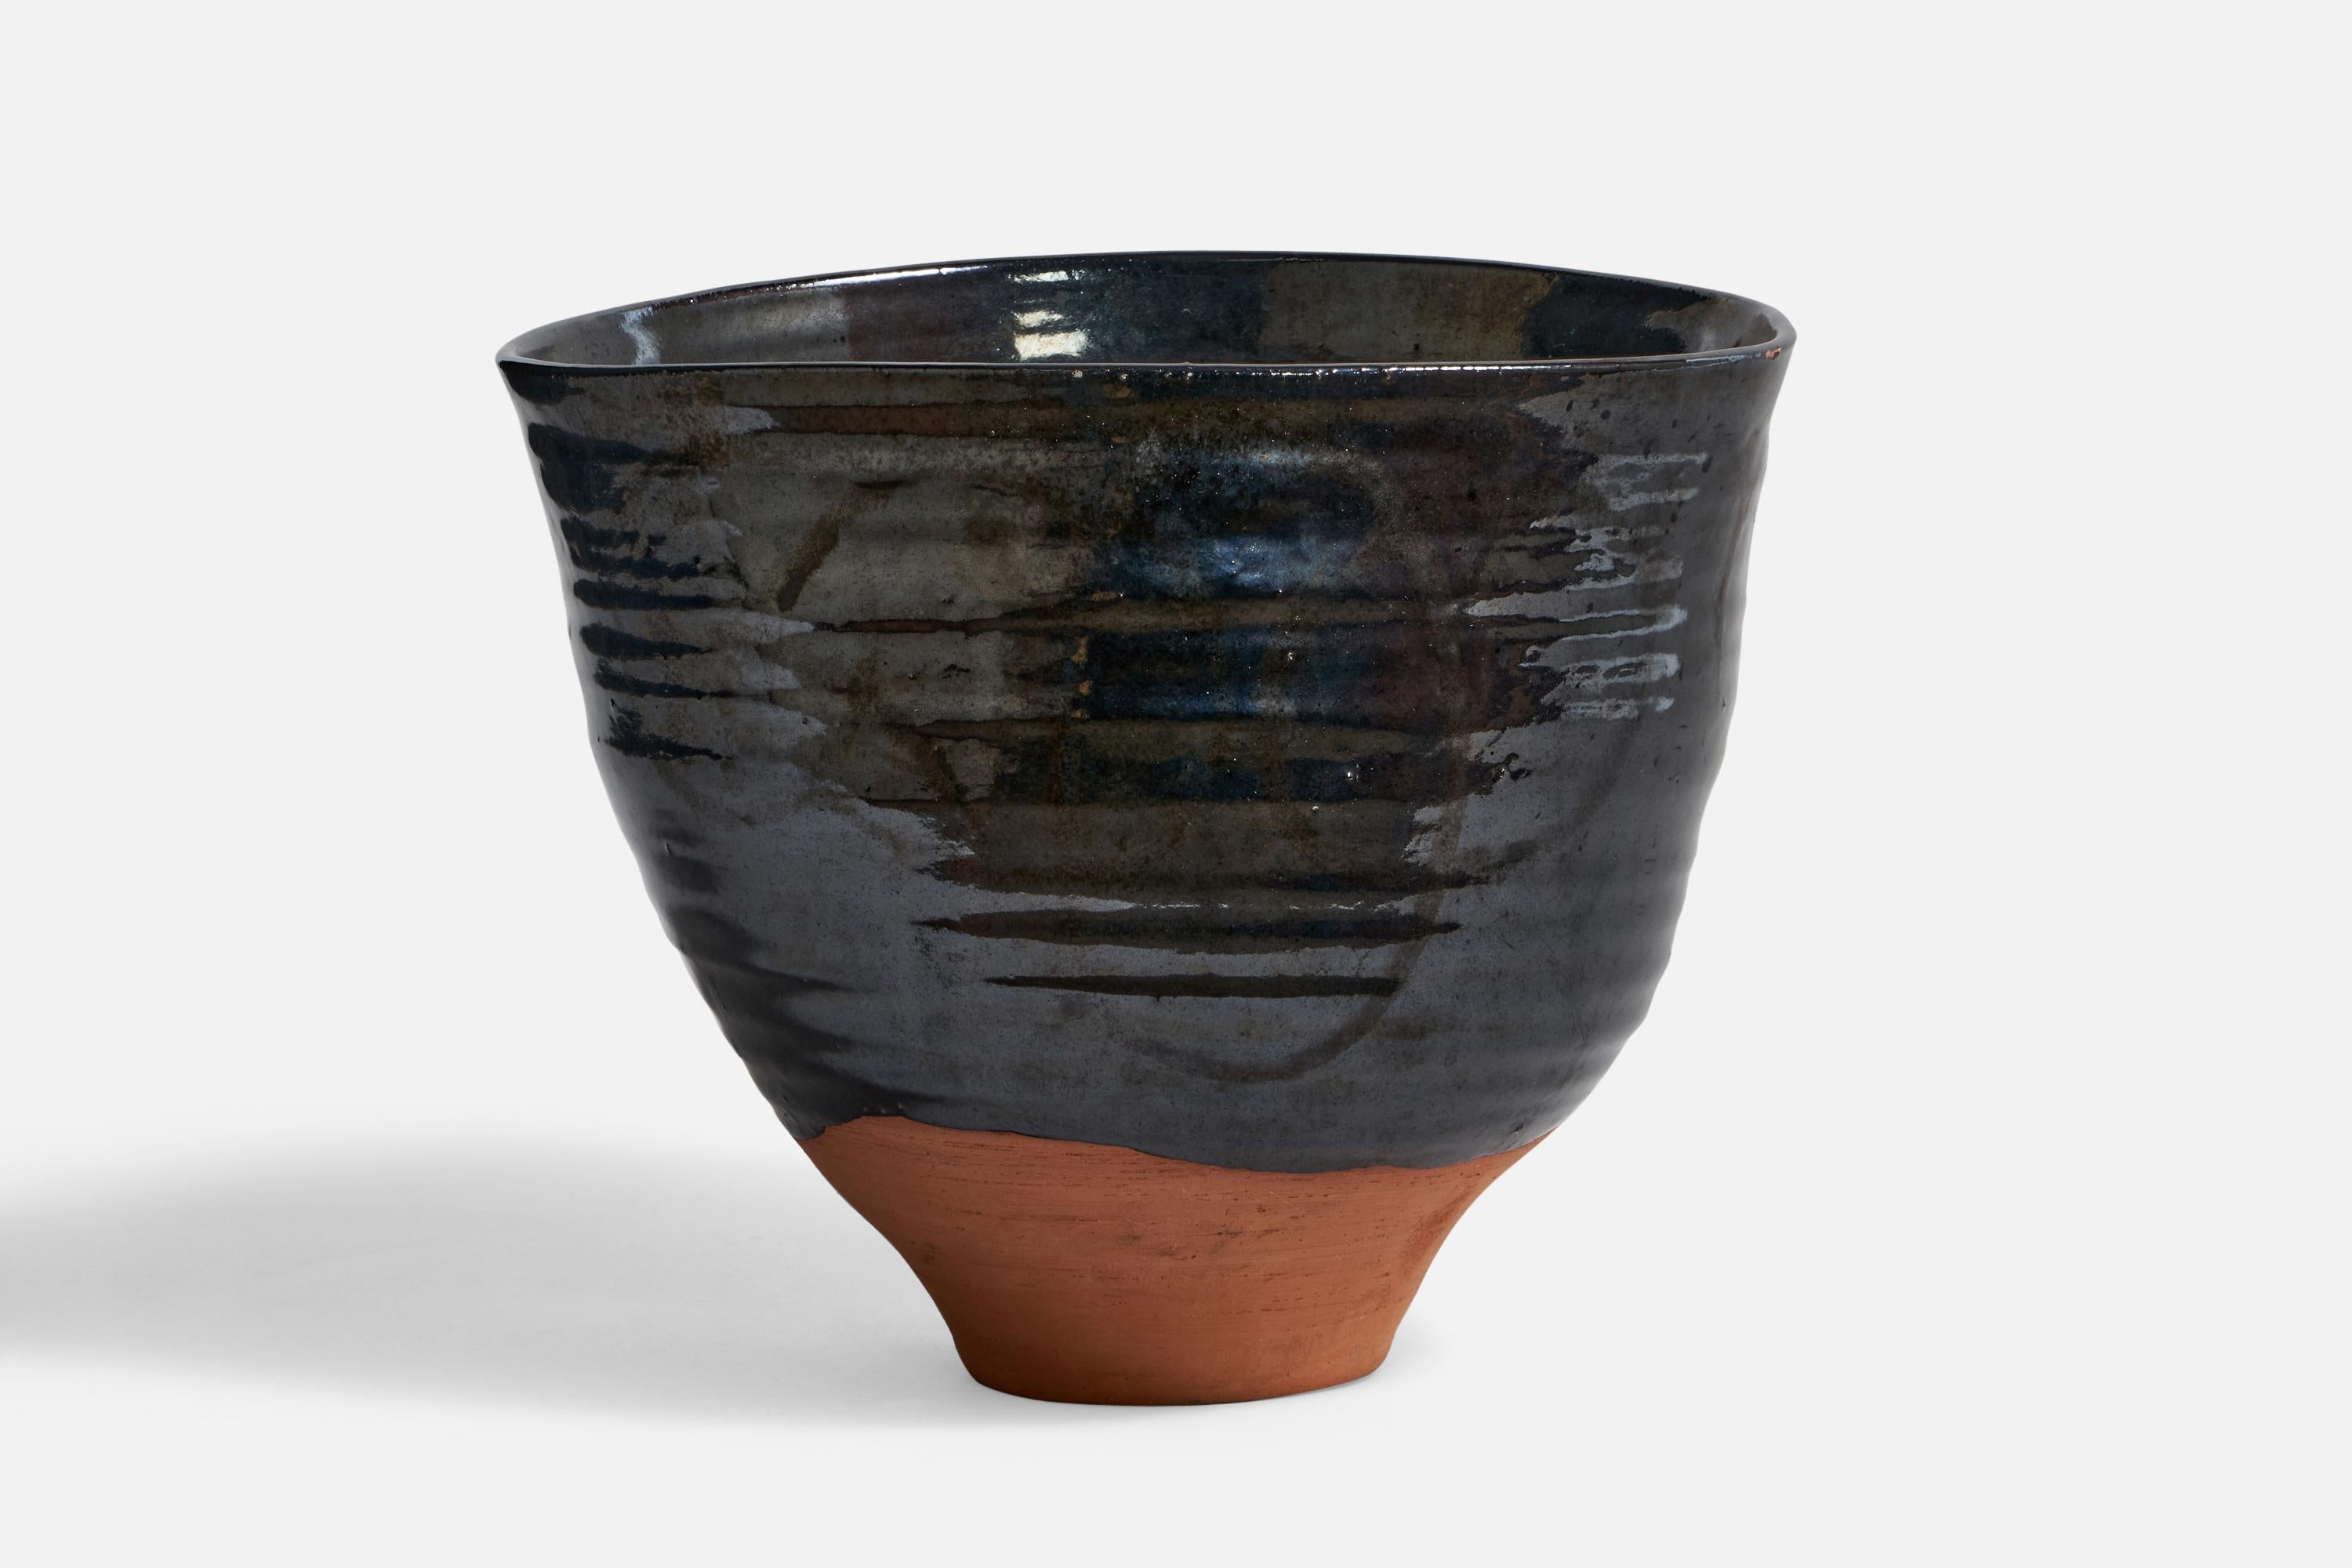 A black semi-glazed ceramic vase designed and produced in Denmark, 1940s.